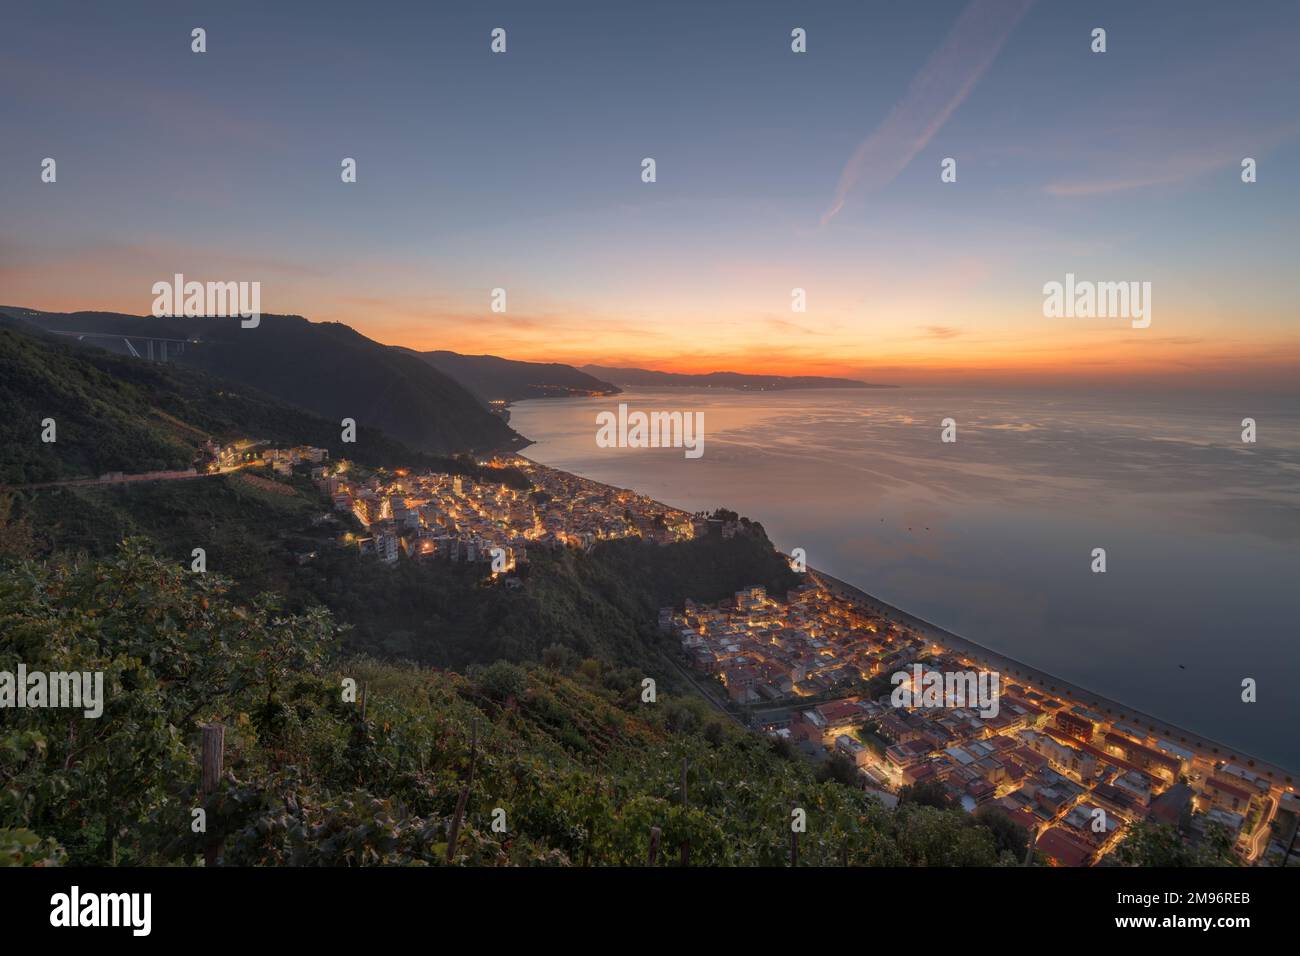 Bagnara Calabra, Italie vue sur la mer Tyrrhénienne au crépuscule. Banque D'Images